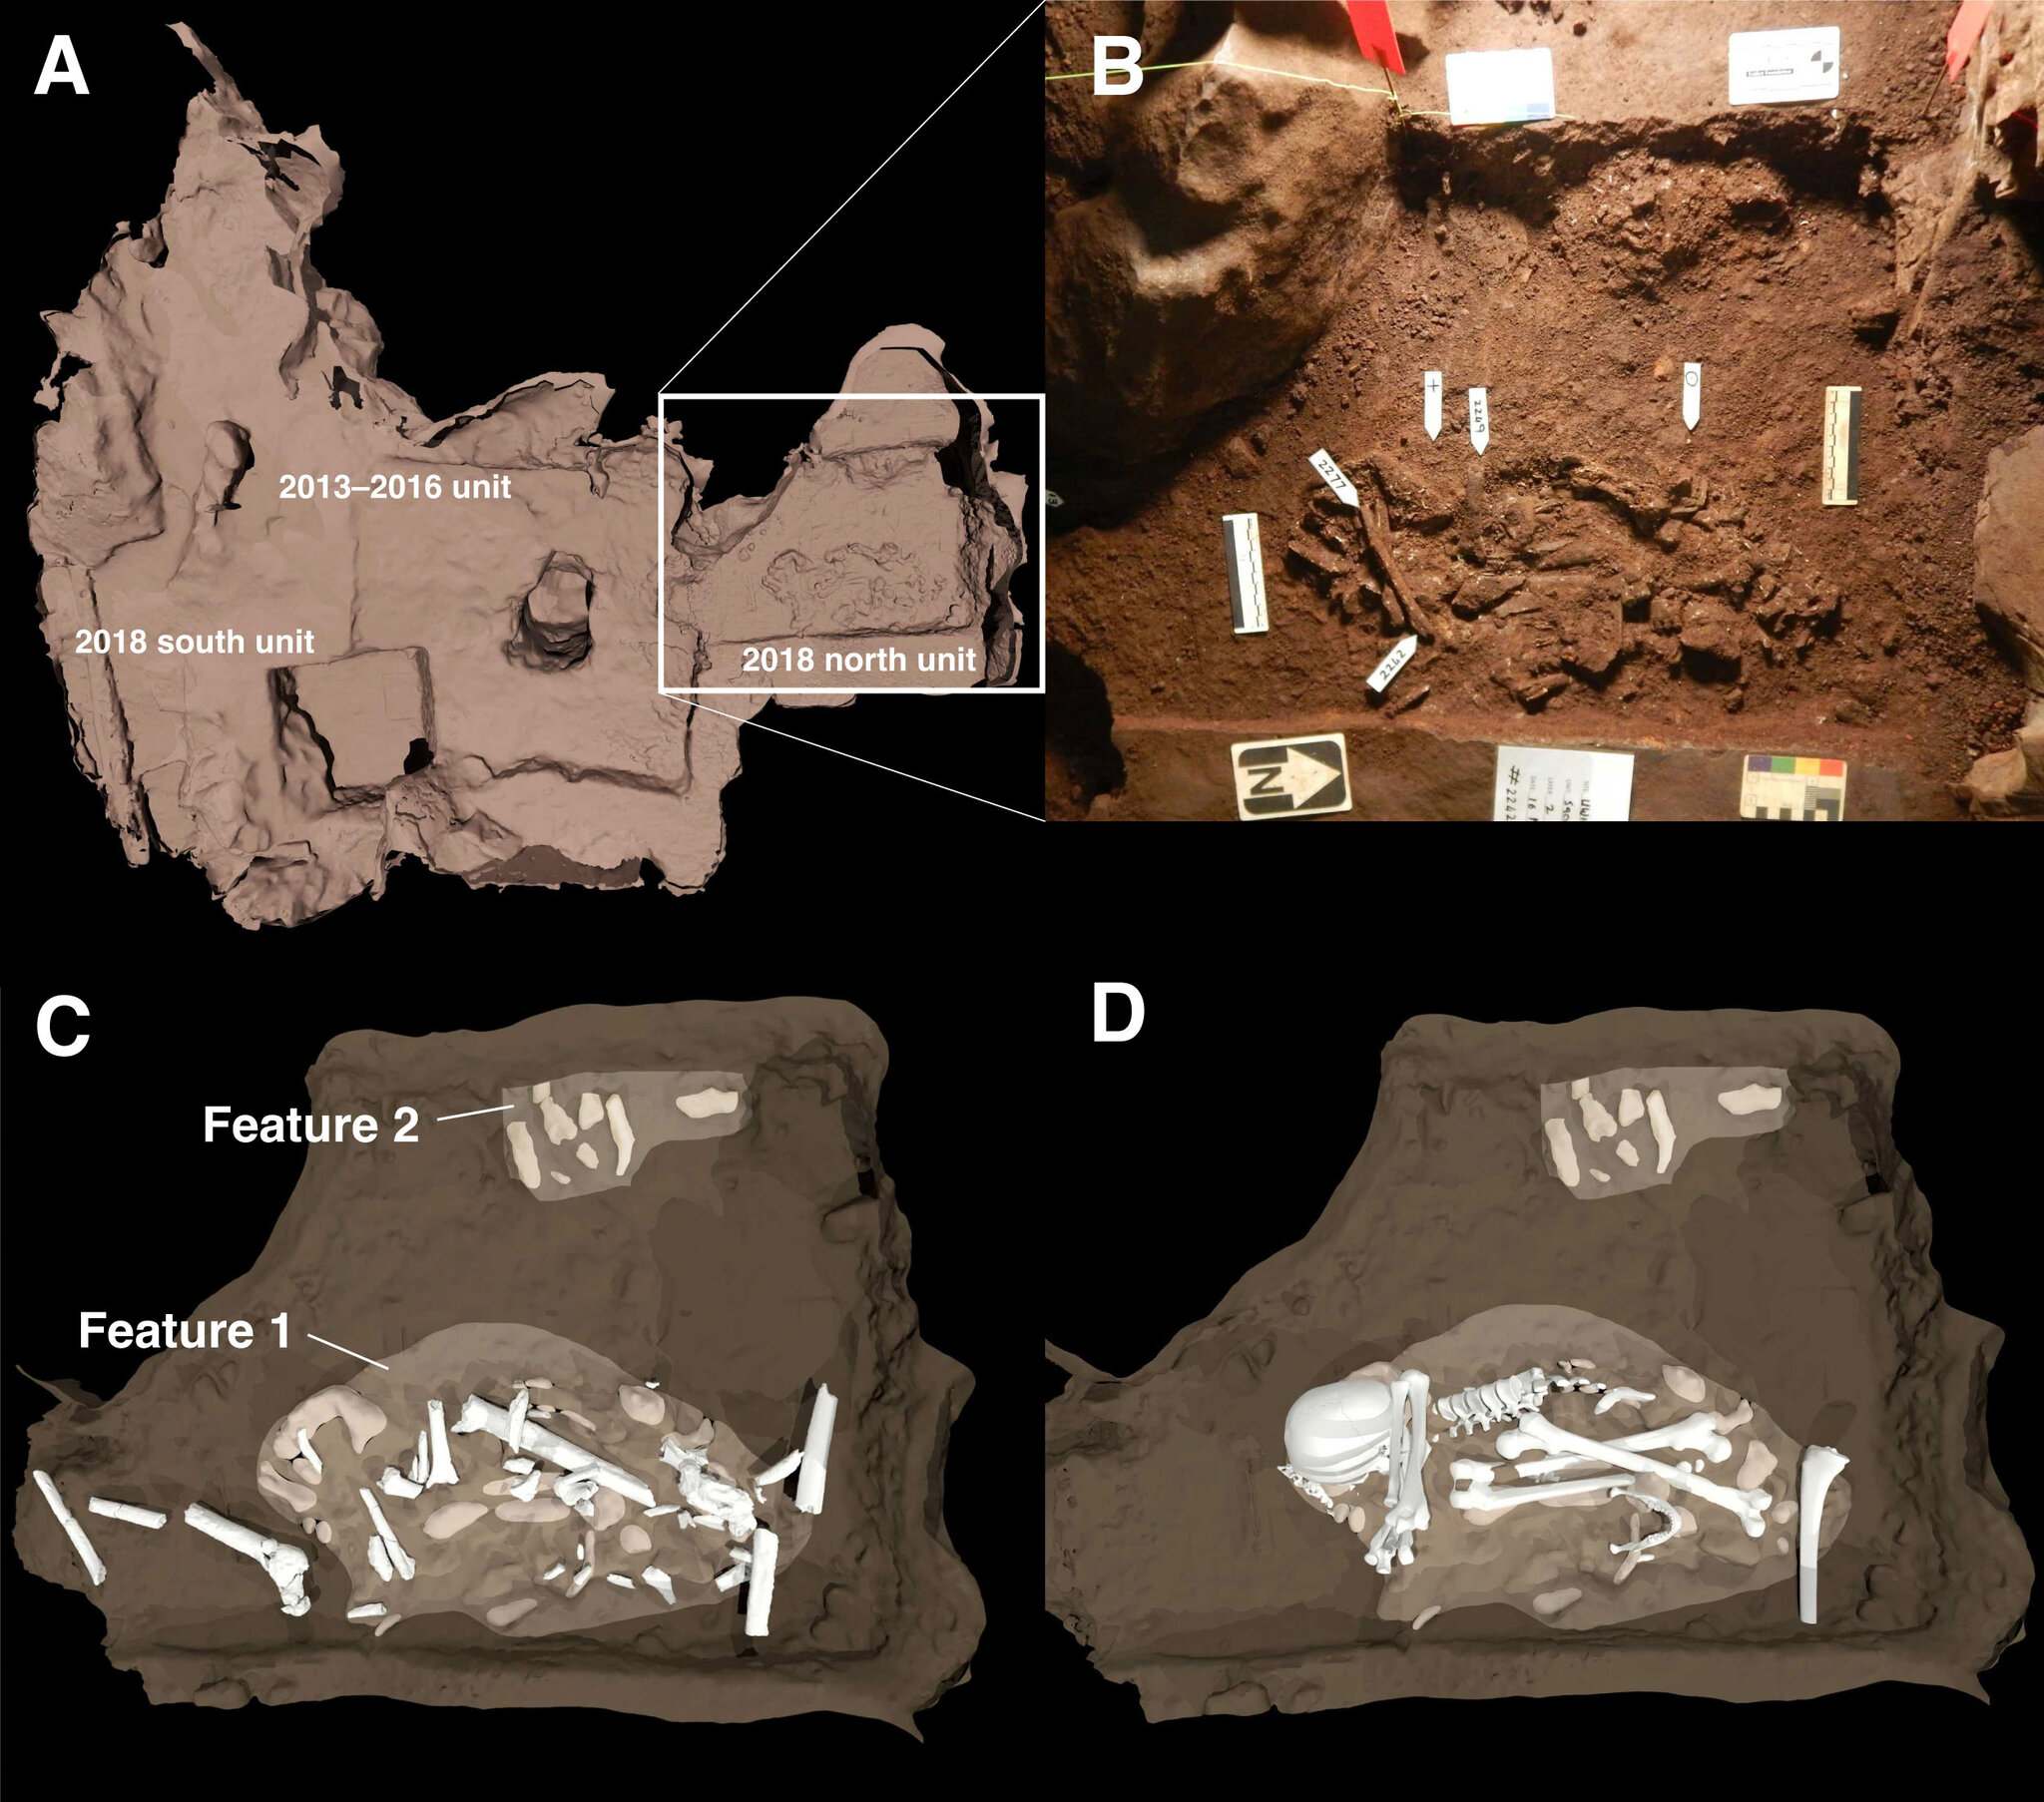 Sơ đồ về hai đặc điểm chôn cất được phát hiện trong Phòng Dinaledi của Hang Ngôi sao đang lên. (A) Vị trí của các ngôi mộ so với các cuộc khai quật năm 2013–2016 được vạch ra theo diện tích hình vuông. (B) Đây là một bức ảnh về các đặc điểm chôn cất chính. Đặc điểm 1 là cơ thể của một mẫu vật trưởng thành Homo naledi. Đặc điểm 2 cho thấy ít nhất một thi thể trẻ vị thành niên ở rìa khu chôn cất. (C) và (D) là những hình minh họa cho thấy xương được định vị bên trong các ngôi mộ như thế nào.